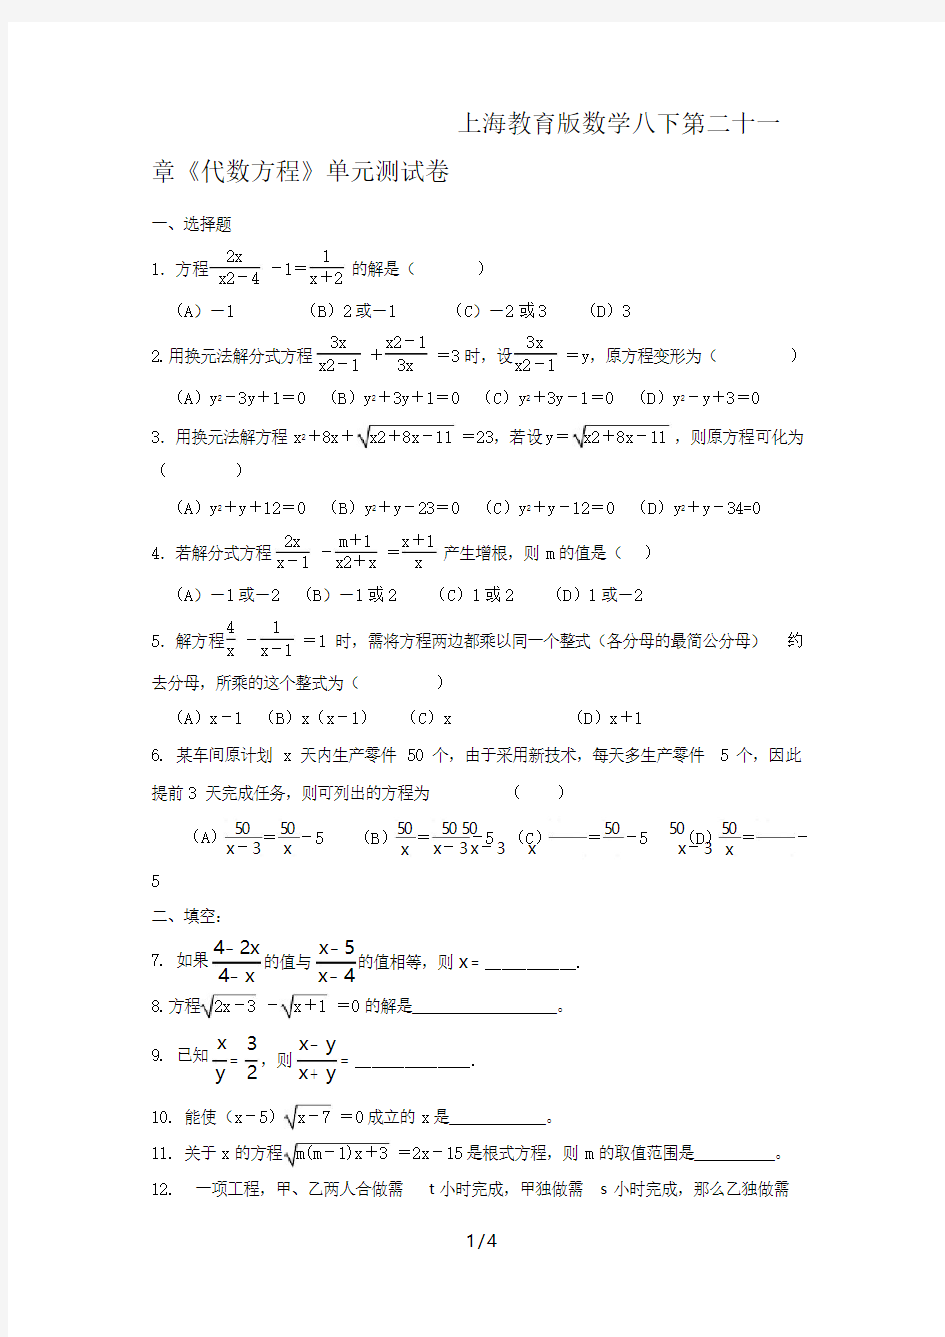 上海教育版数学八下第二十一章《代数方程》单元测试卷